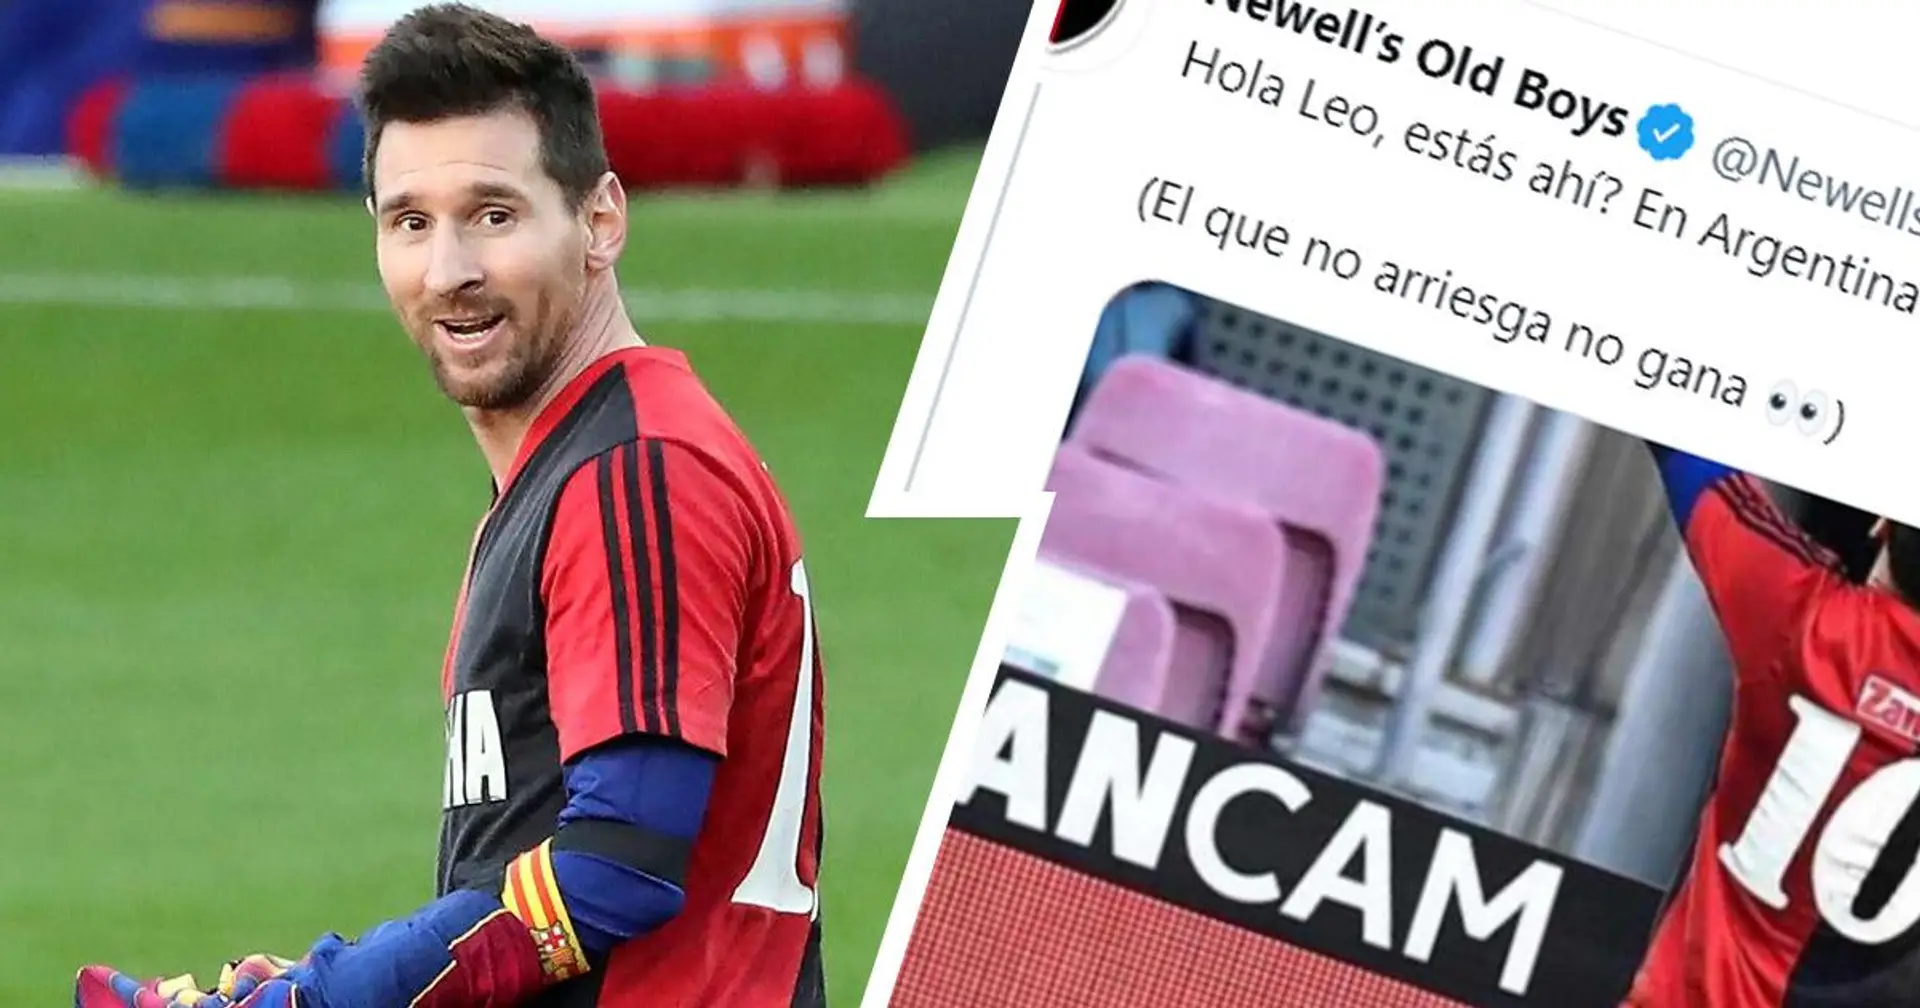 "Salut Leo, êtes-vous là?": Les Old Boys de Newell accueillent en plaisantant Messi à nouveau alors que l'Argentin est agent libre